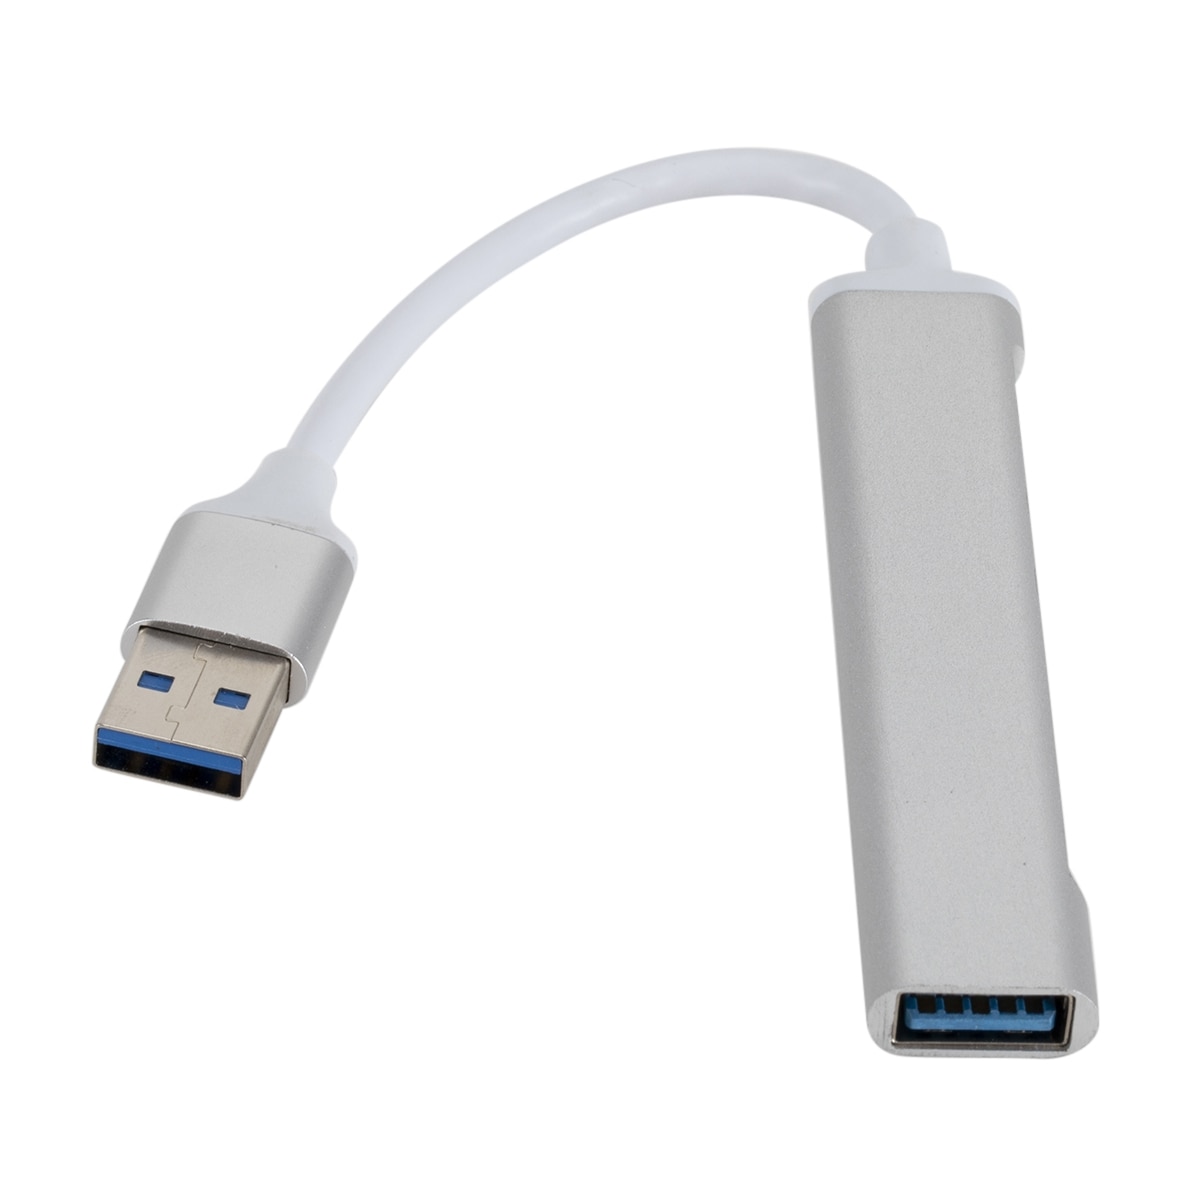 USB-Splitter USB 3.0 til 1x USB 2.0 & 3x USB 3.0